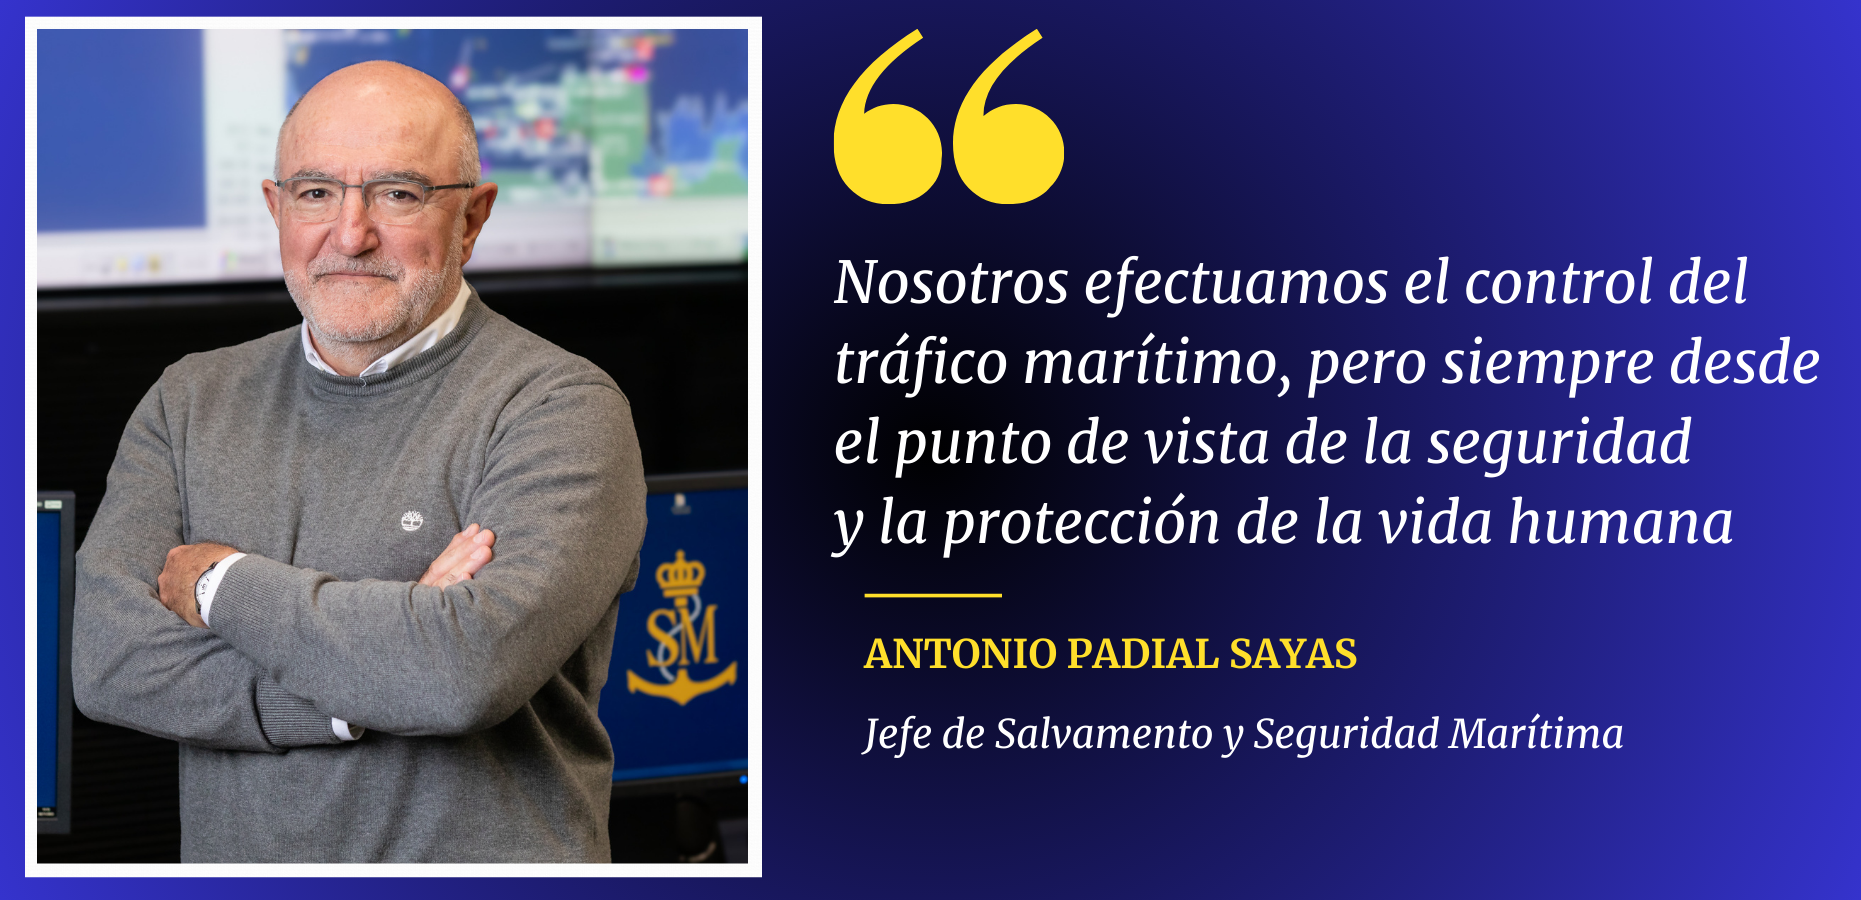 Antonio Padial Sayas Jefe de Salvamento y Seguridad Marítima